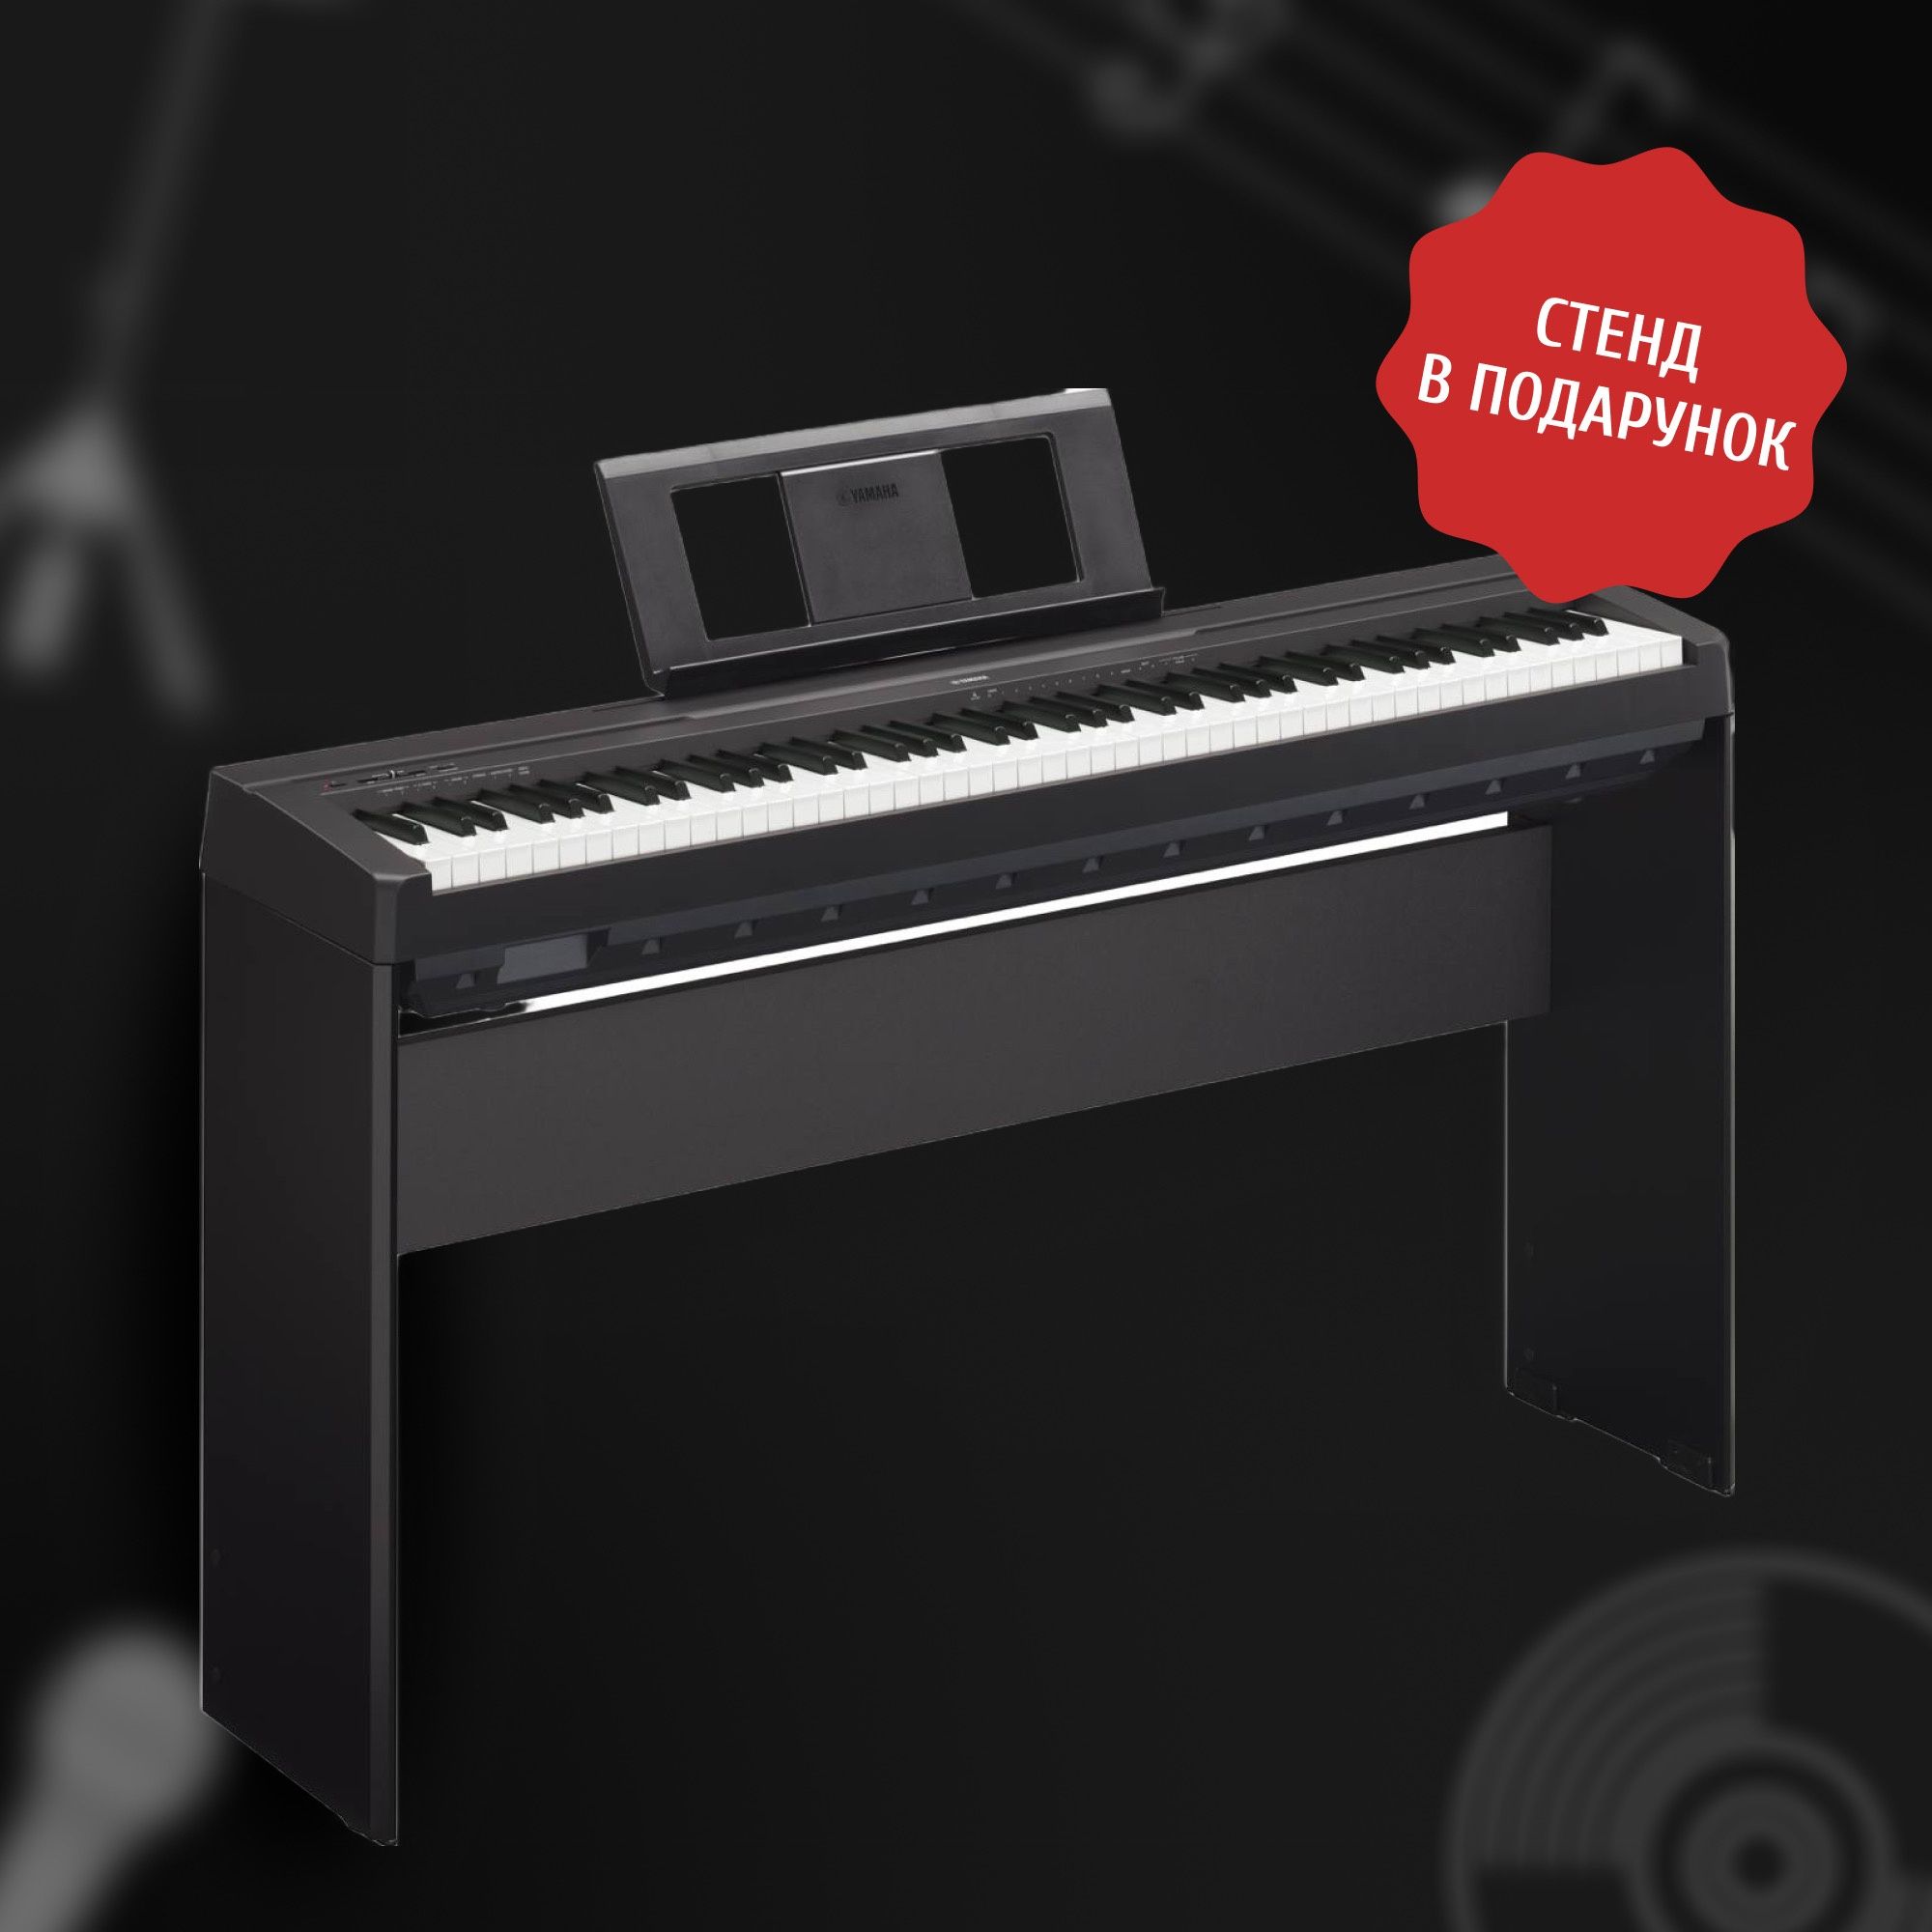 Цифровое пианино Yamaha P-145+Деревянный Стенд в Подарок!